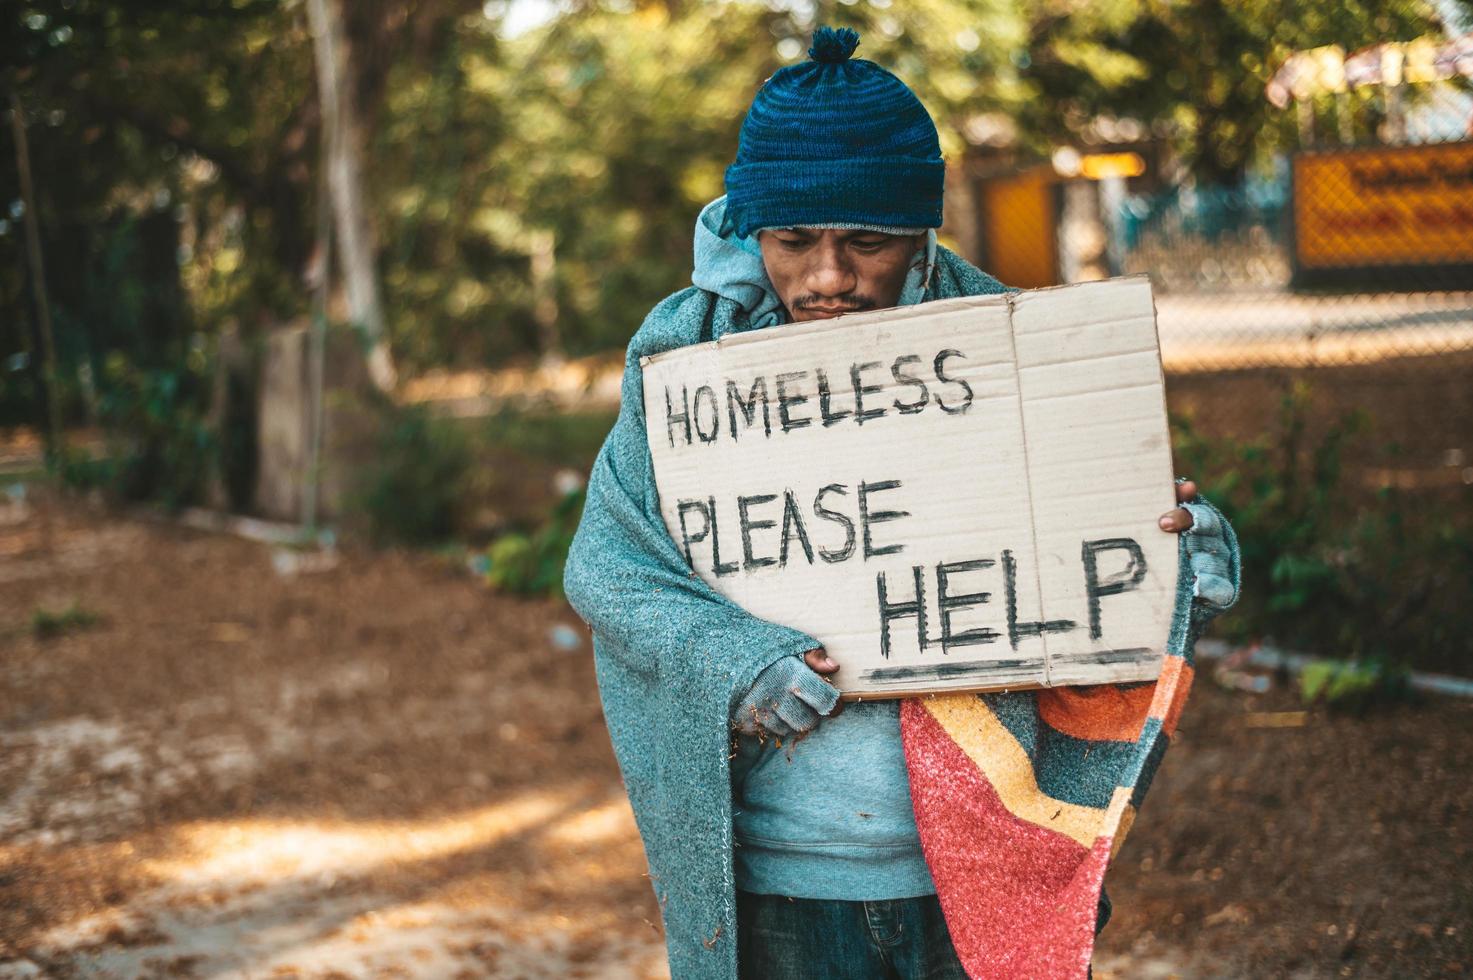 bedelaar staat op straat met berichten over daklozen, help alstublieft foto